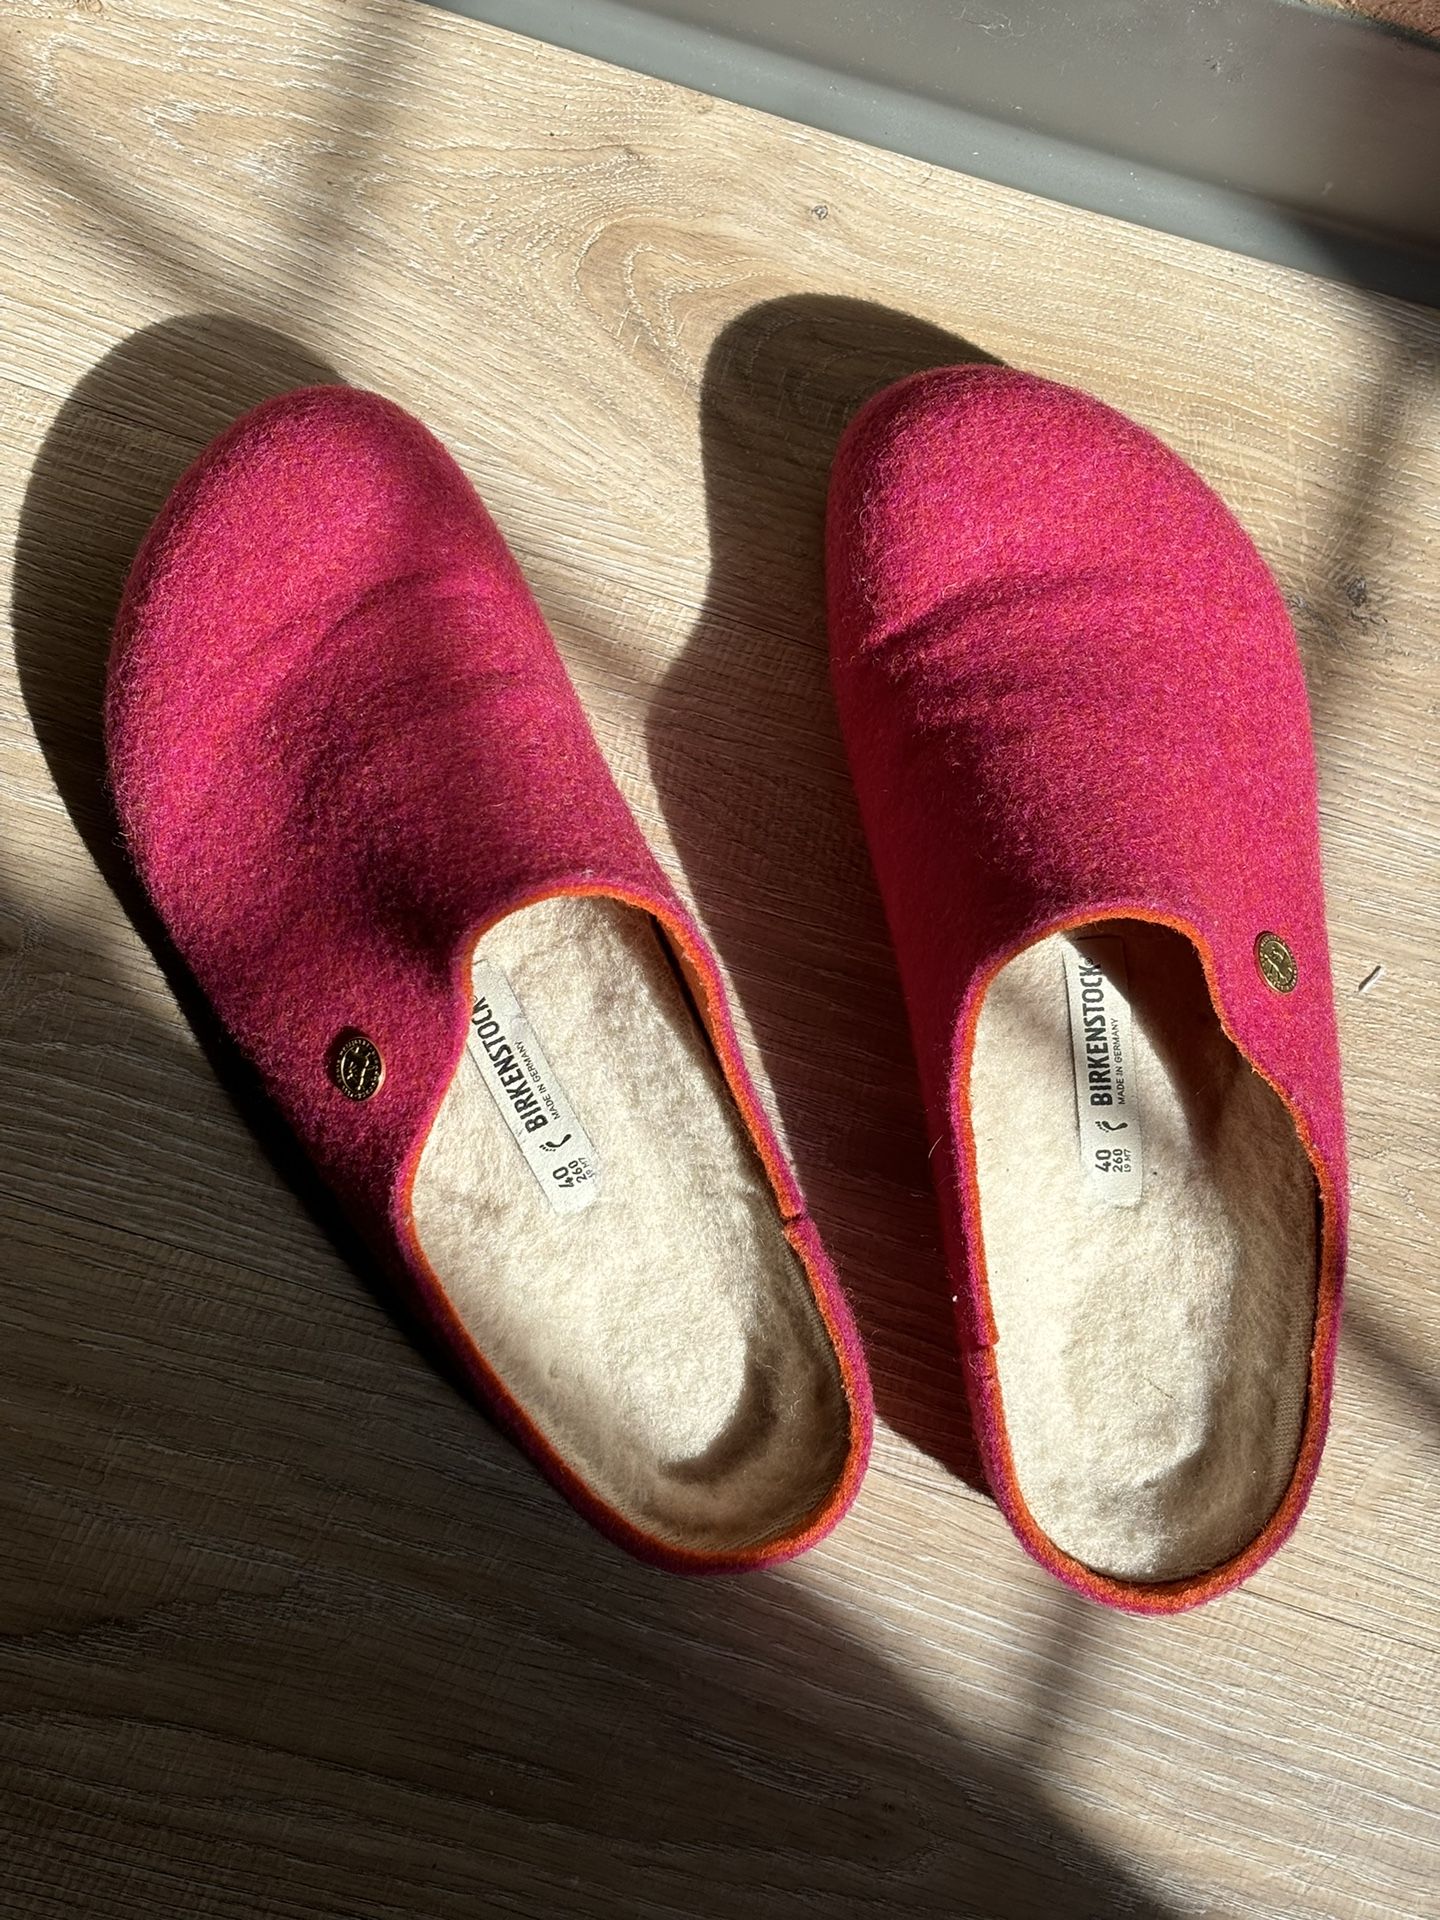 Women’s Wool Pink Birkenstock Shoes OBO